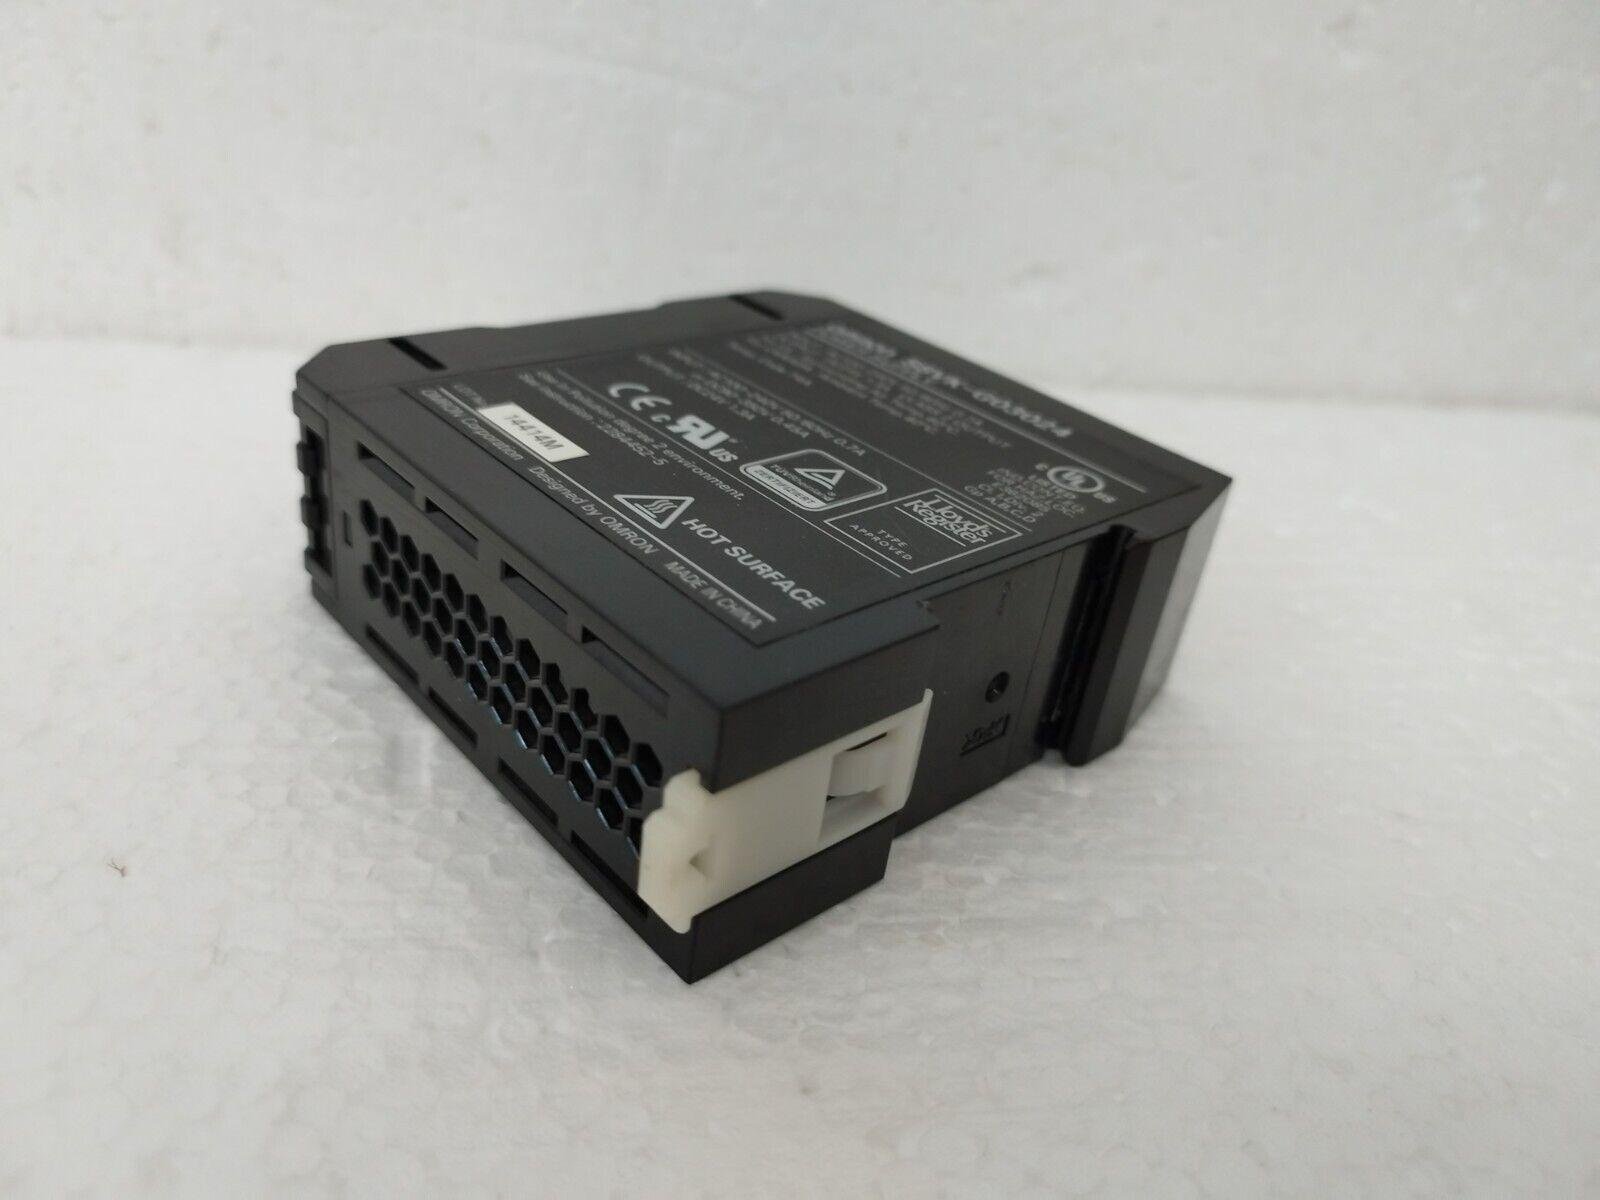 OMRON S8VK-G03024 power input: AC 100-240V; Output: DC24V 1.3A Genuine Power Sup 2